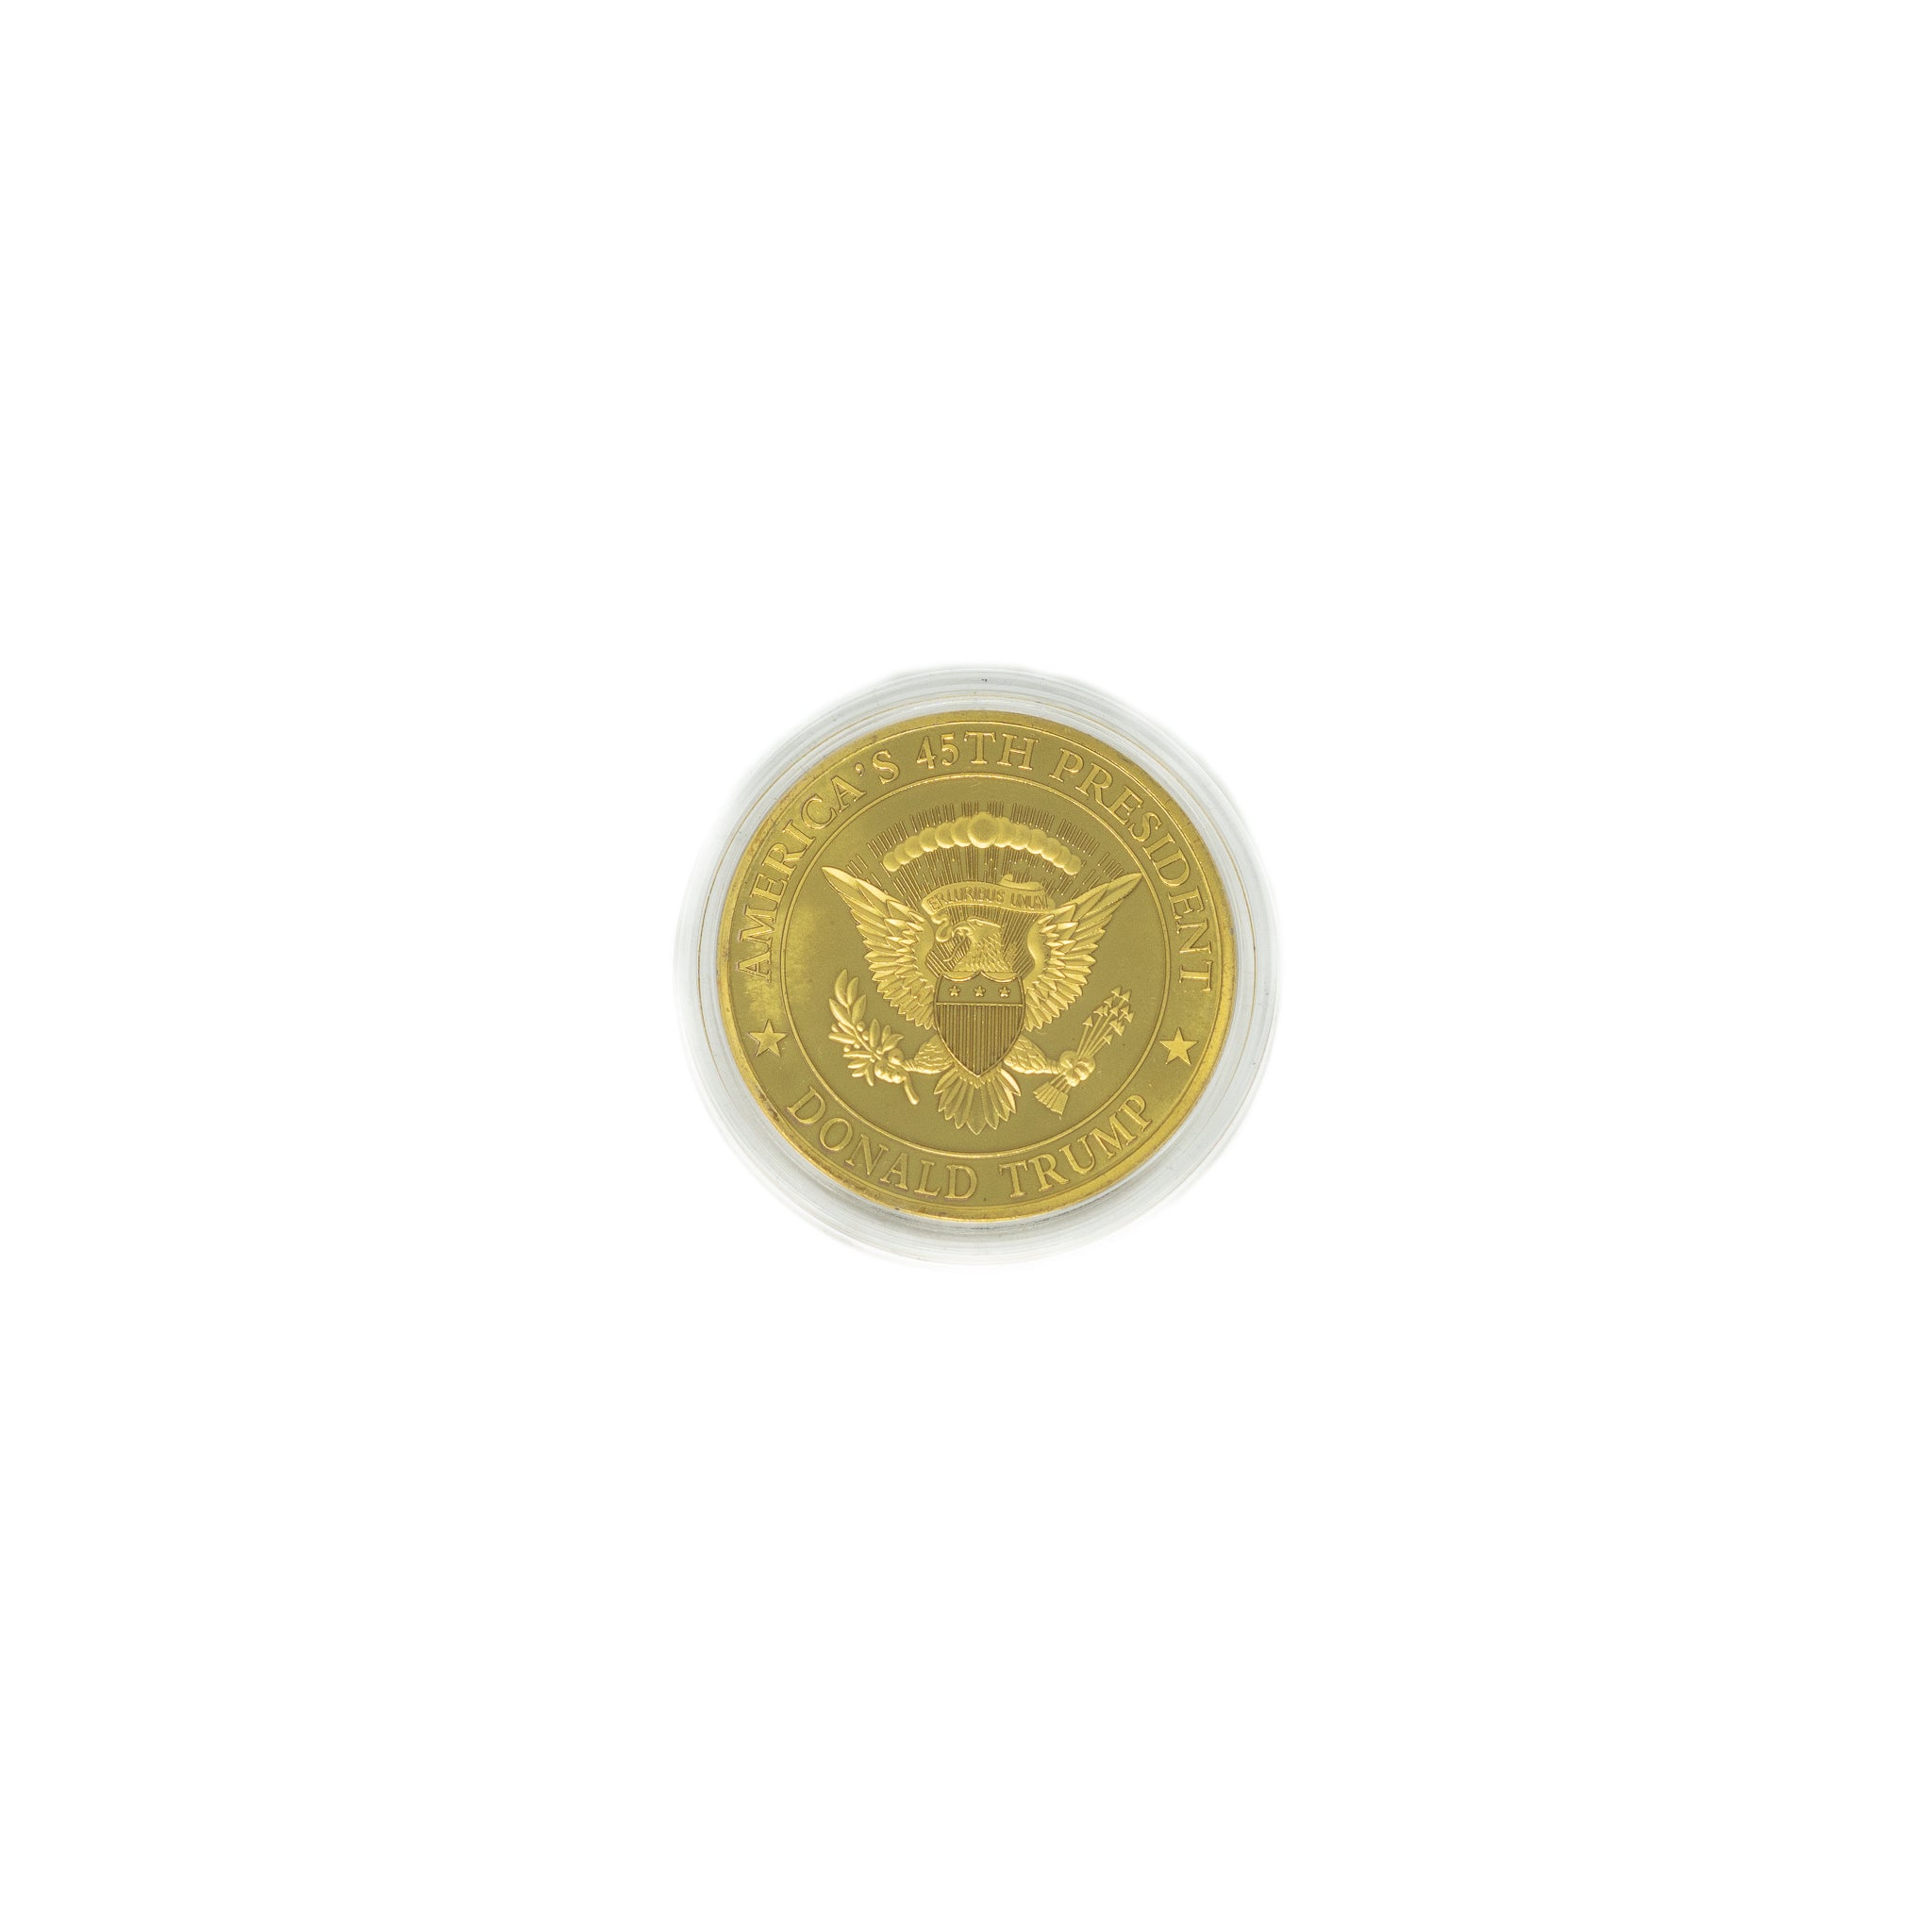 President Donald Trump Collectible Coin